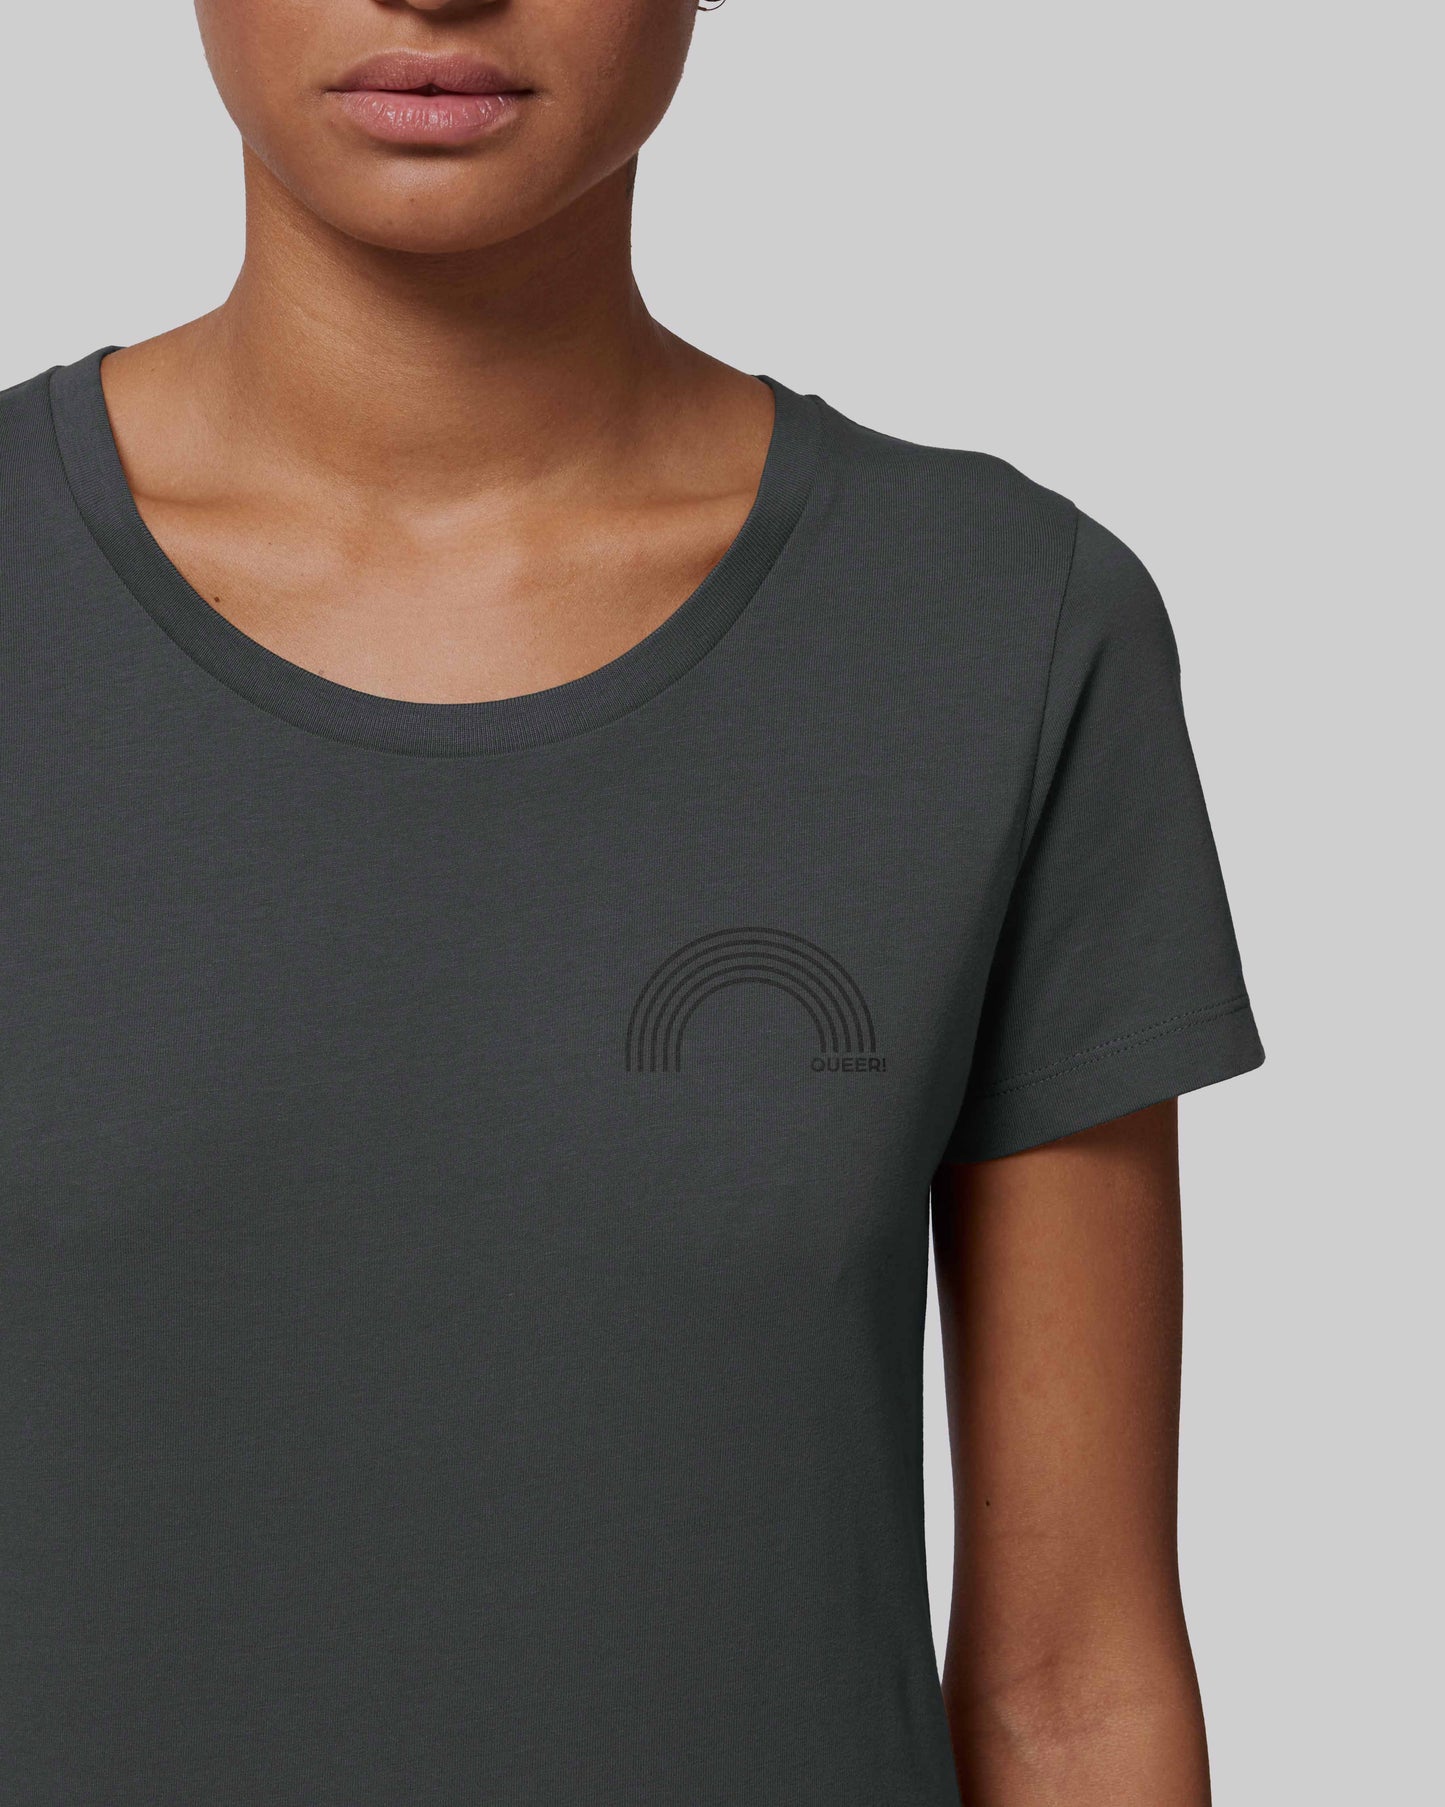 EINHORST® Organic Shirt tailliert in "Anthracite" mit dem Motiv "queer Regenbogen" in der Kombination schwarzer Regenbogen mit schwarzer Schrift, Bild von weiblicher Person mit Shirt